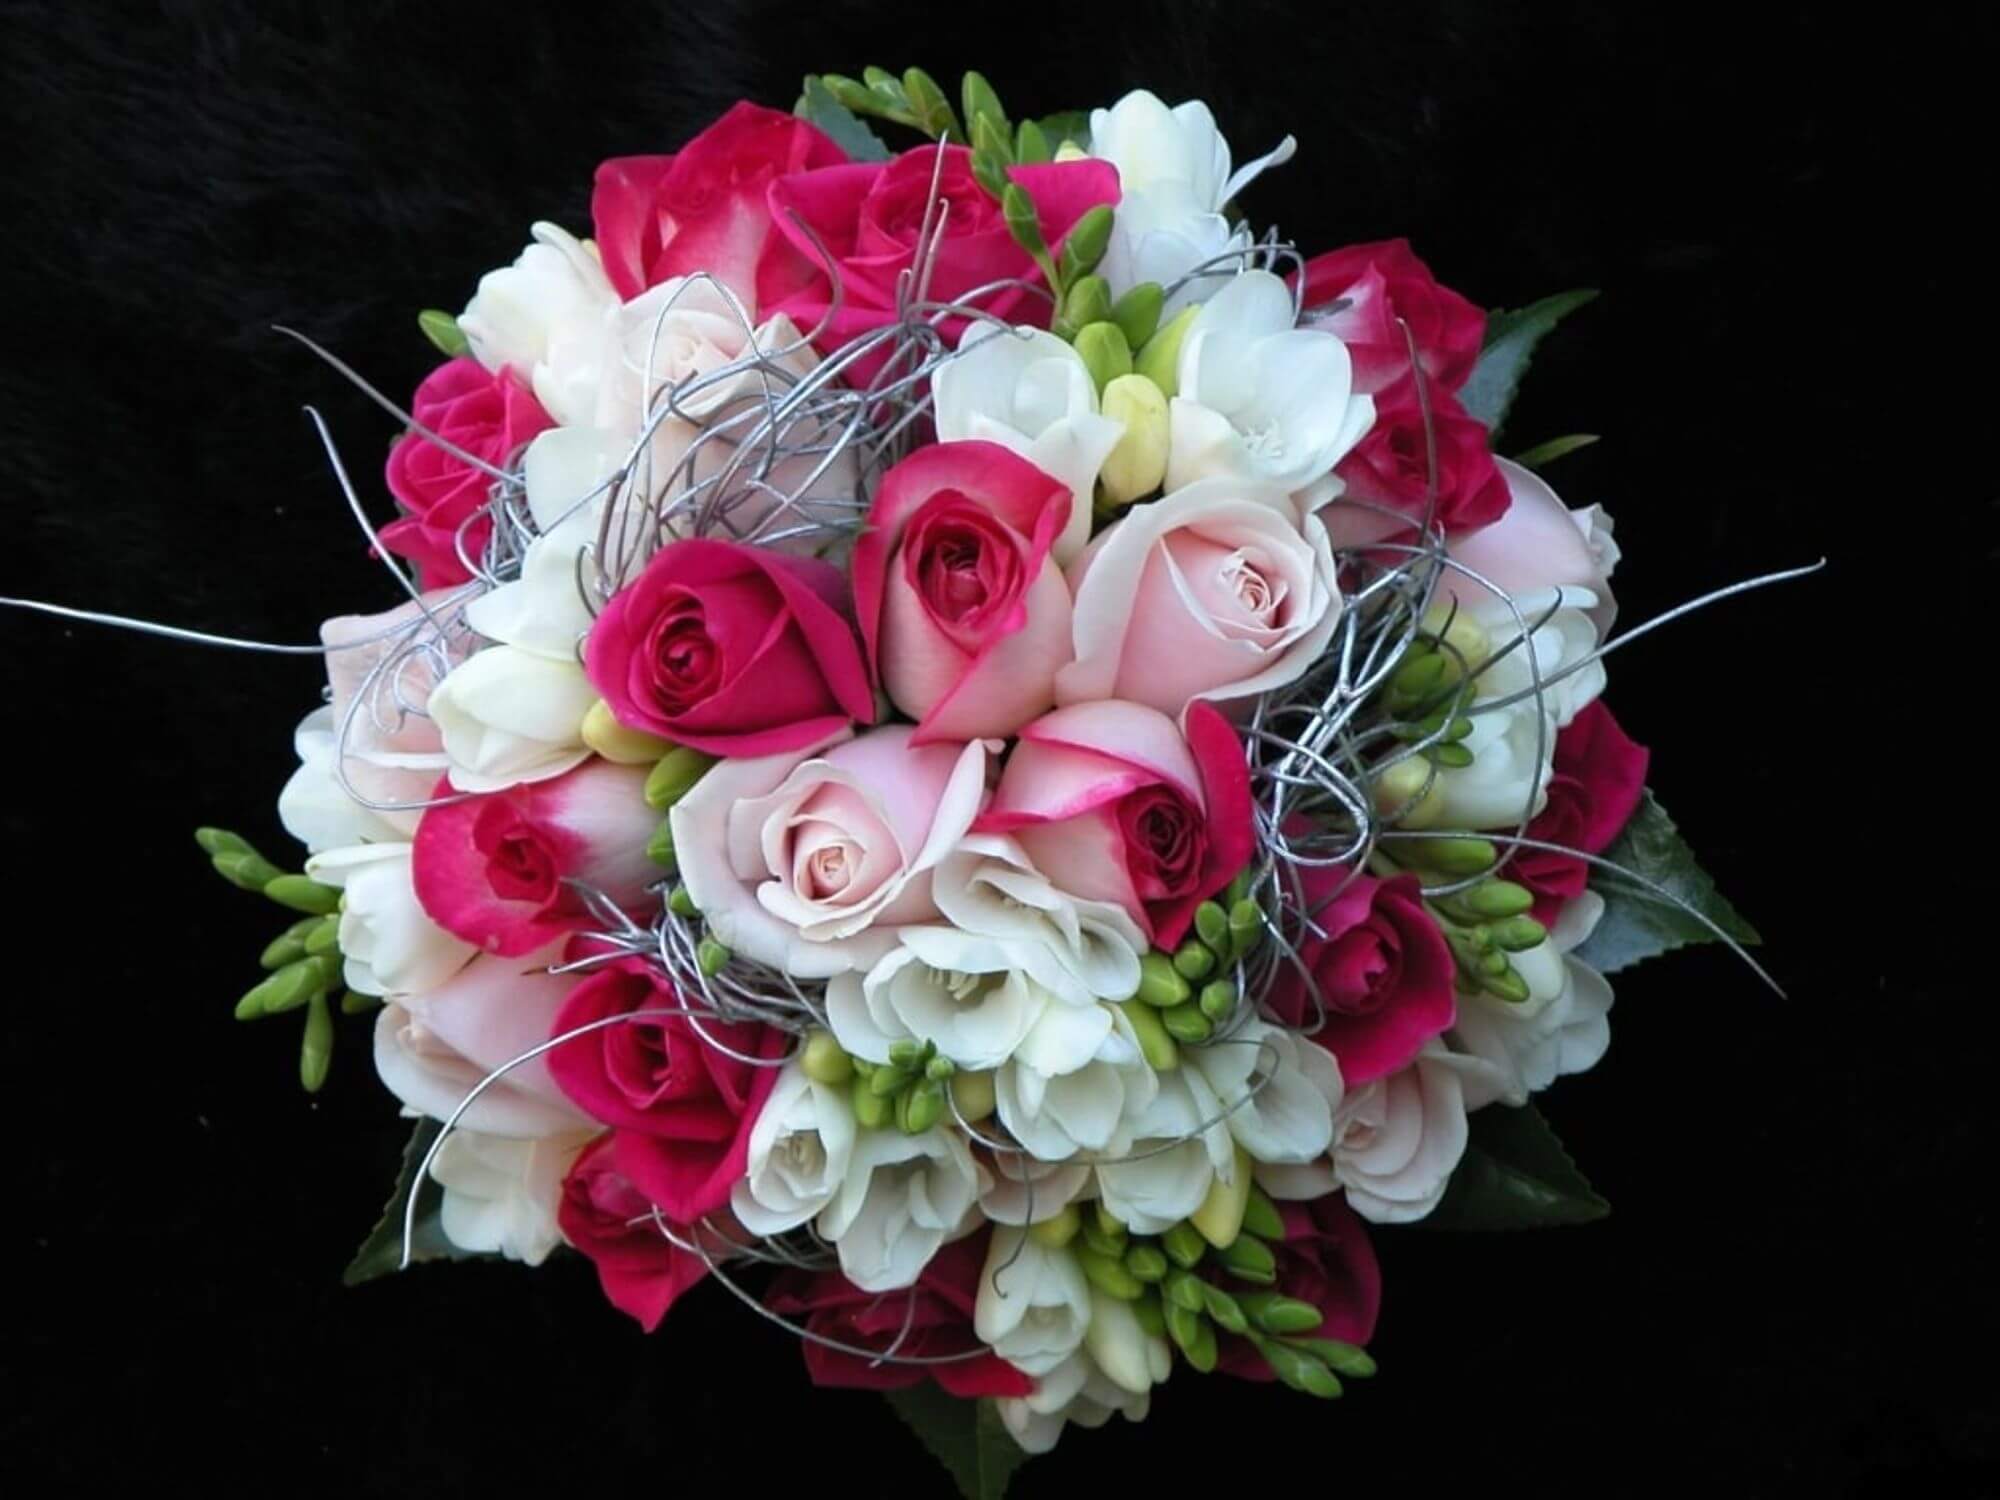 Ukraineflora wedding flowers 23-24 00 6